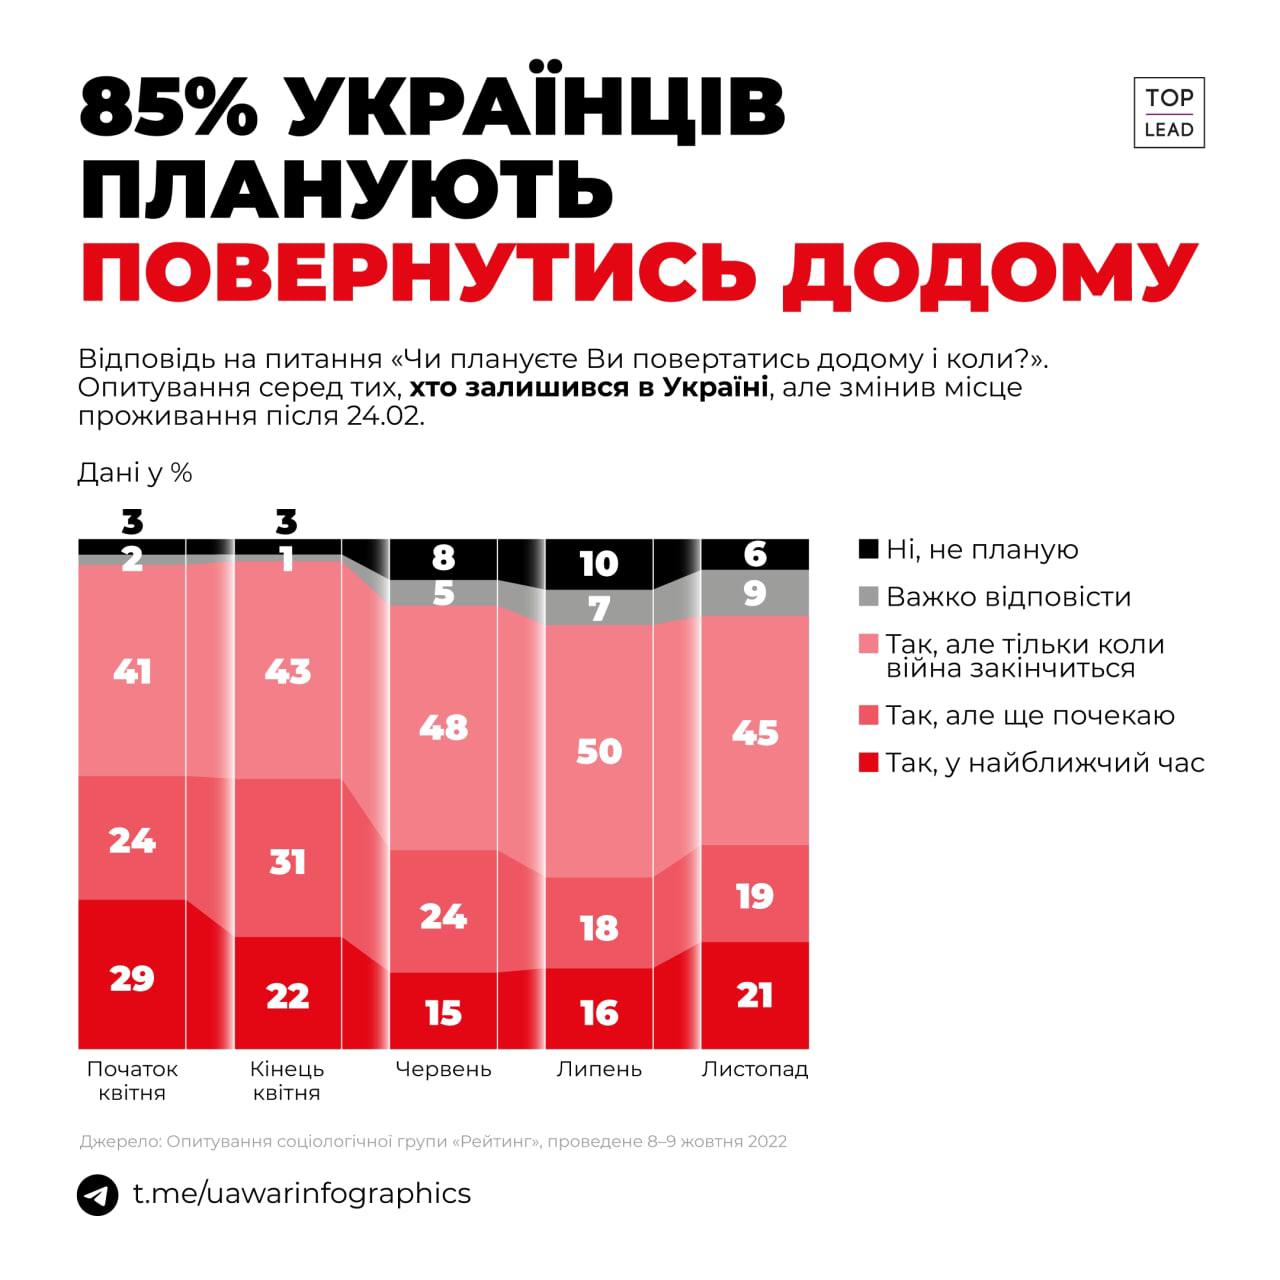 85% украинцев, переехавших в пределах